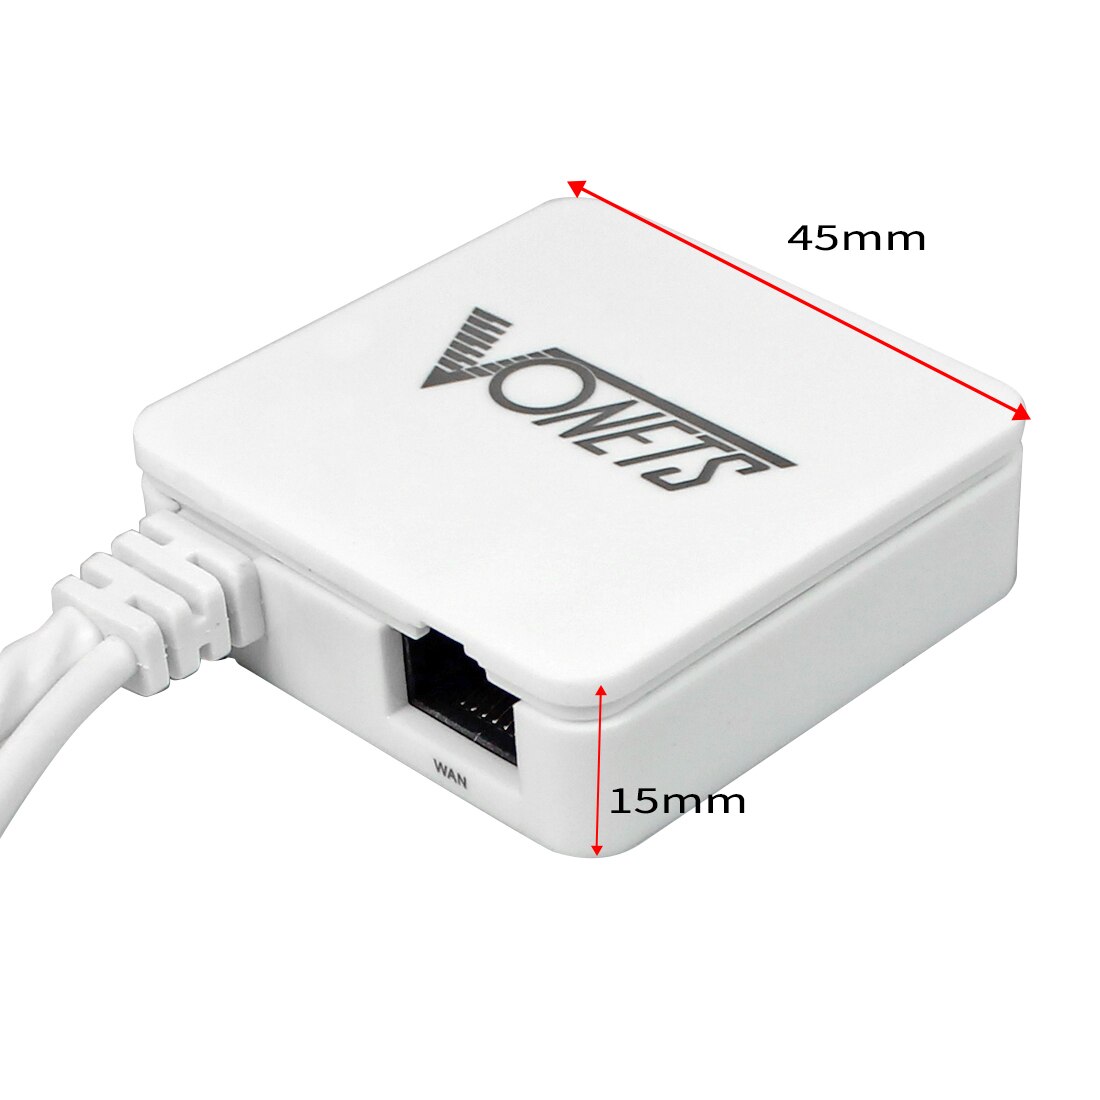 Vonets VAR11N-300 mini WiFi bezprzewodowy router sieciowy i mostek router wi-fi ze wzmacniaczem sygnału 300 mb/s sygnał Wifi stabilny